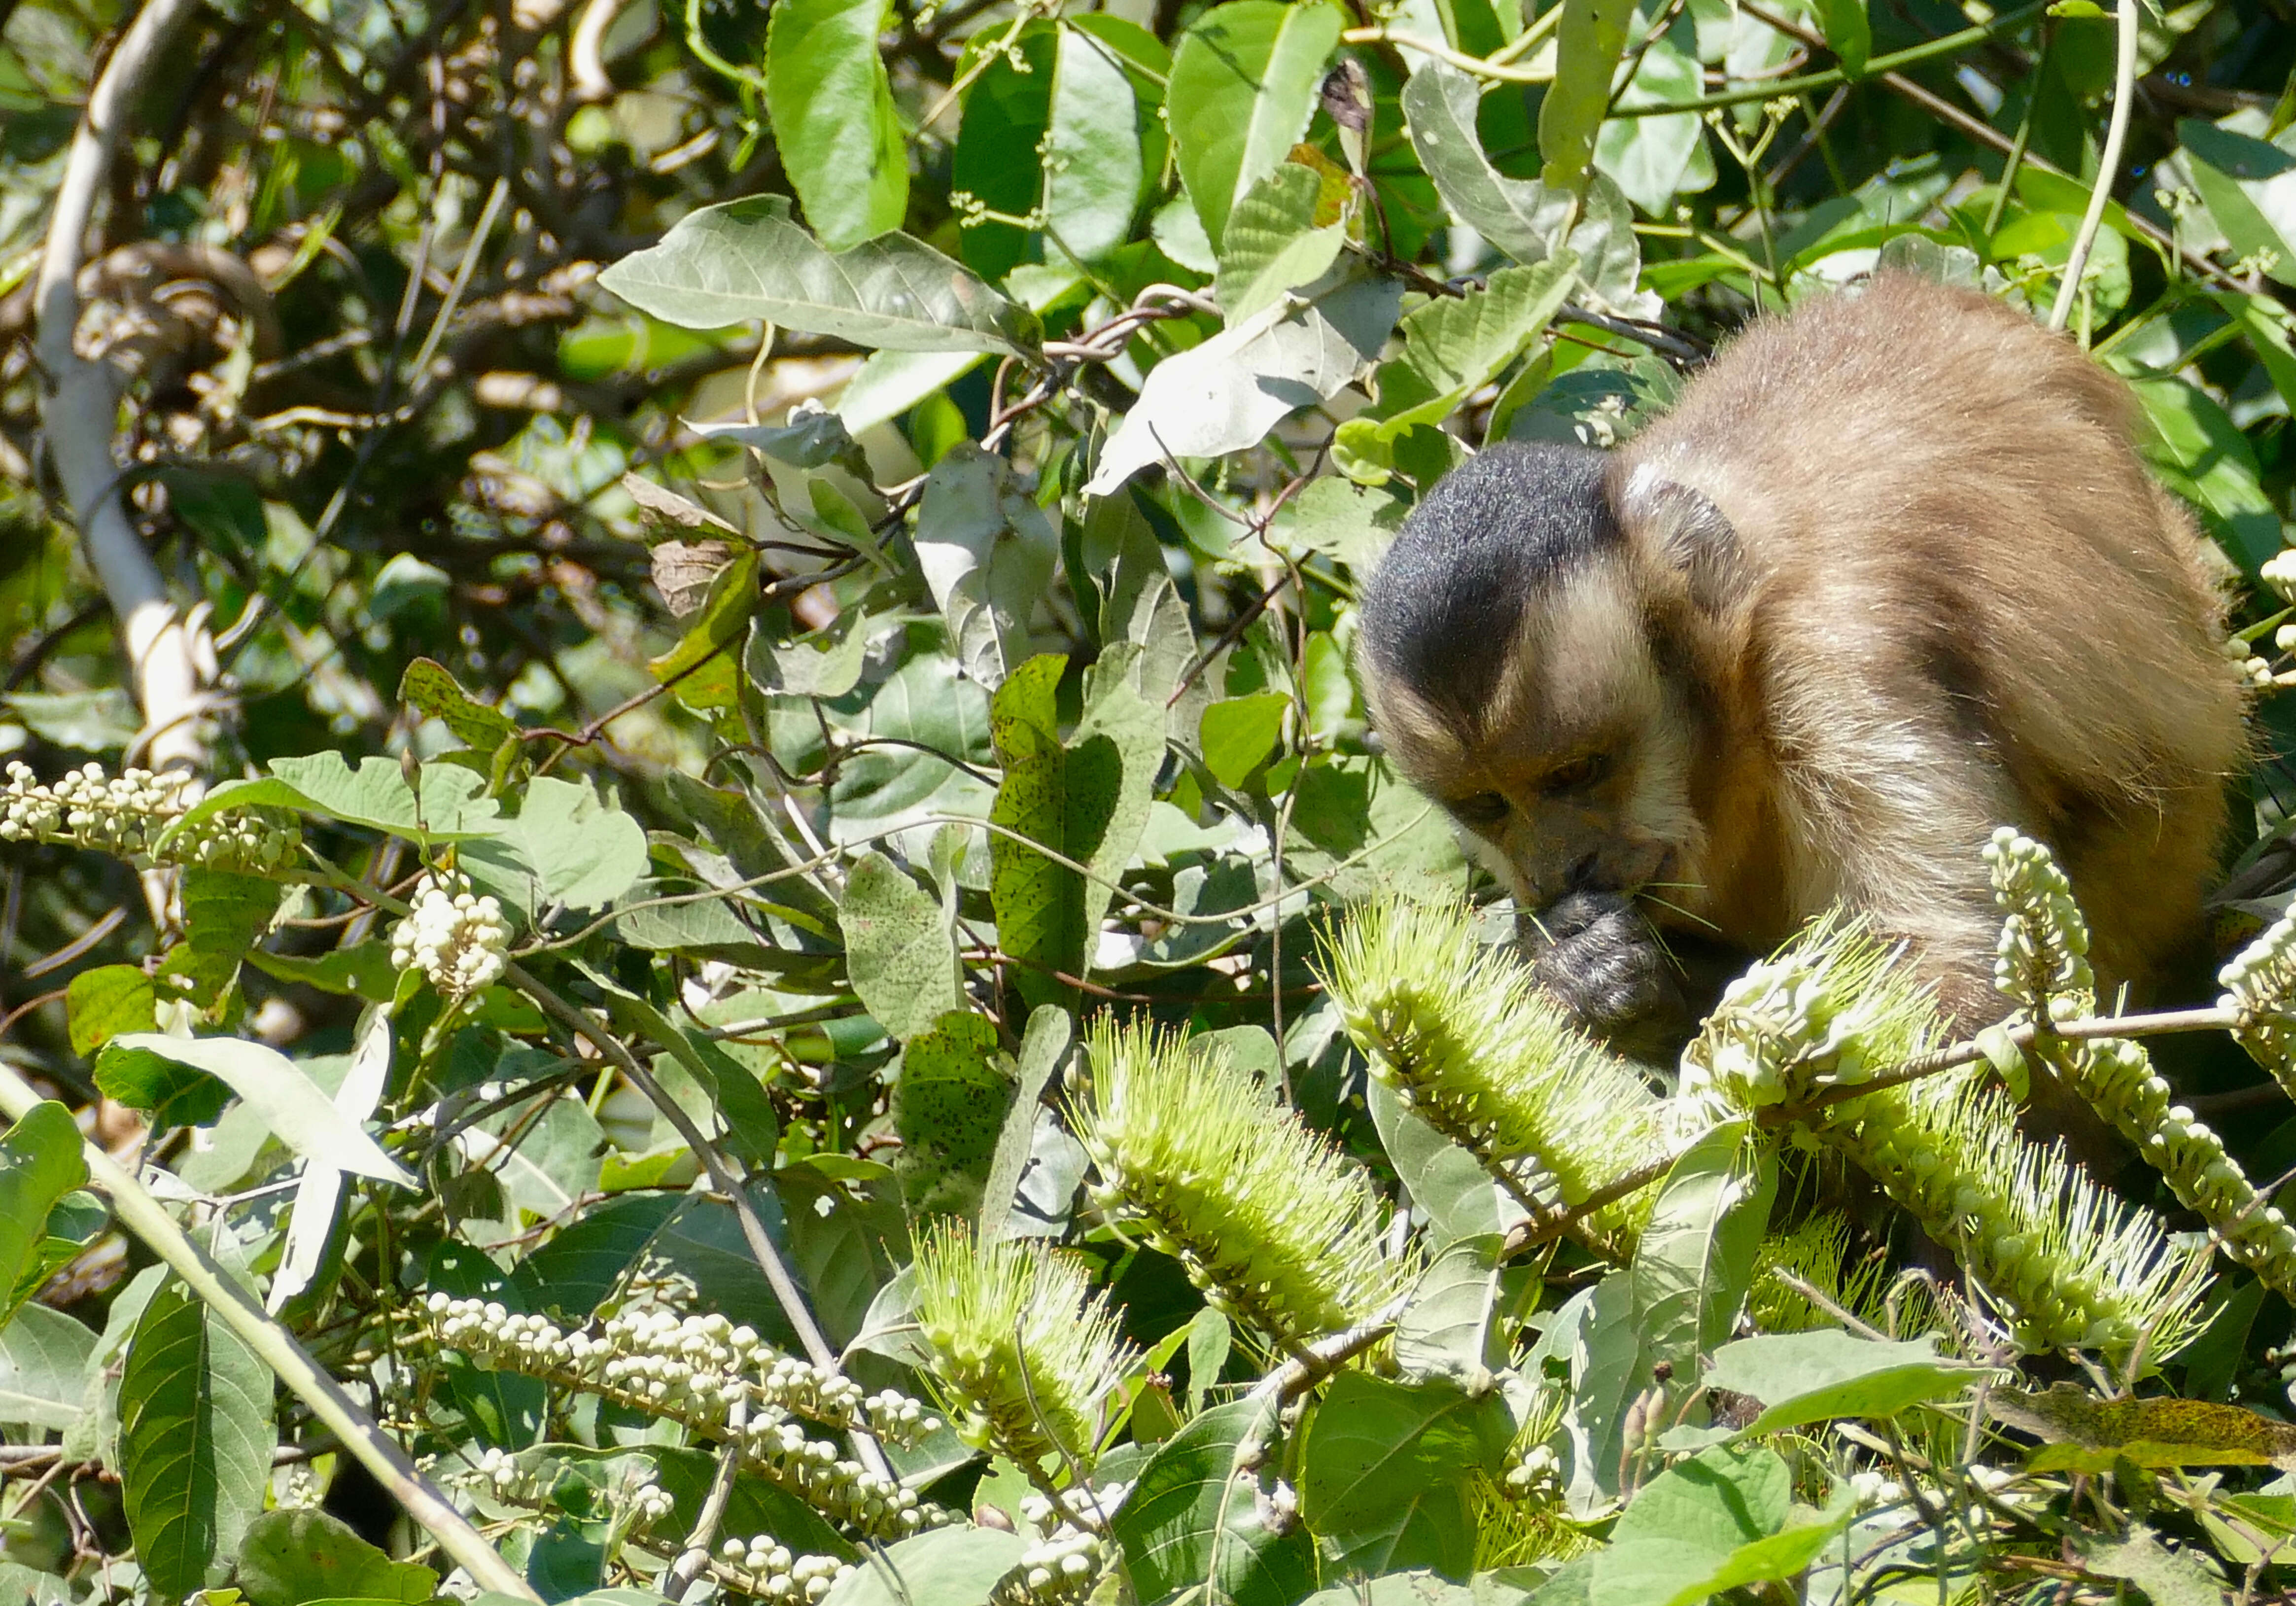 Image of Robust capuchin monkeys